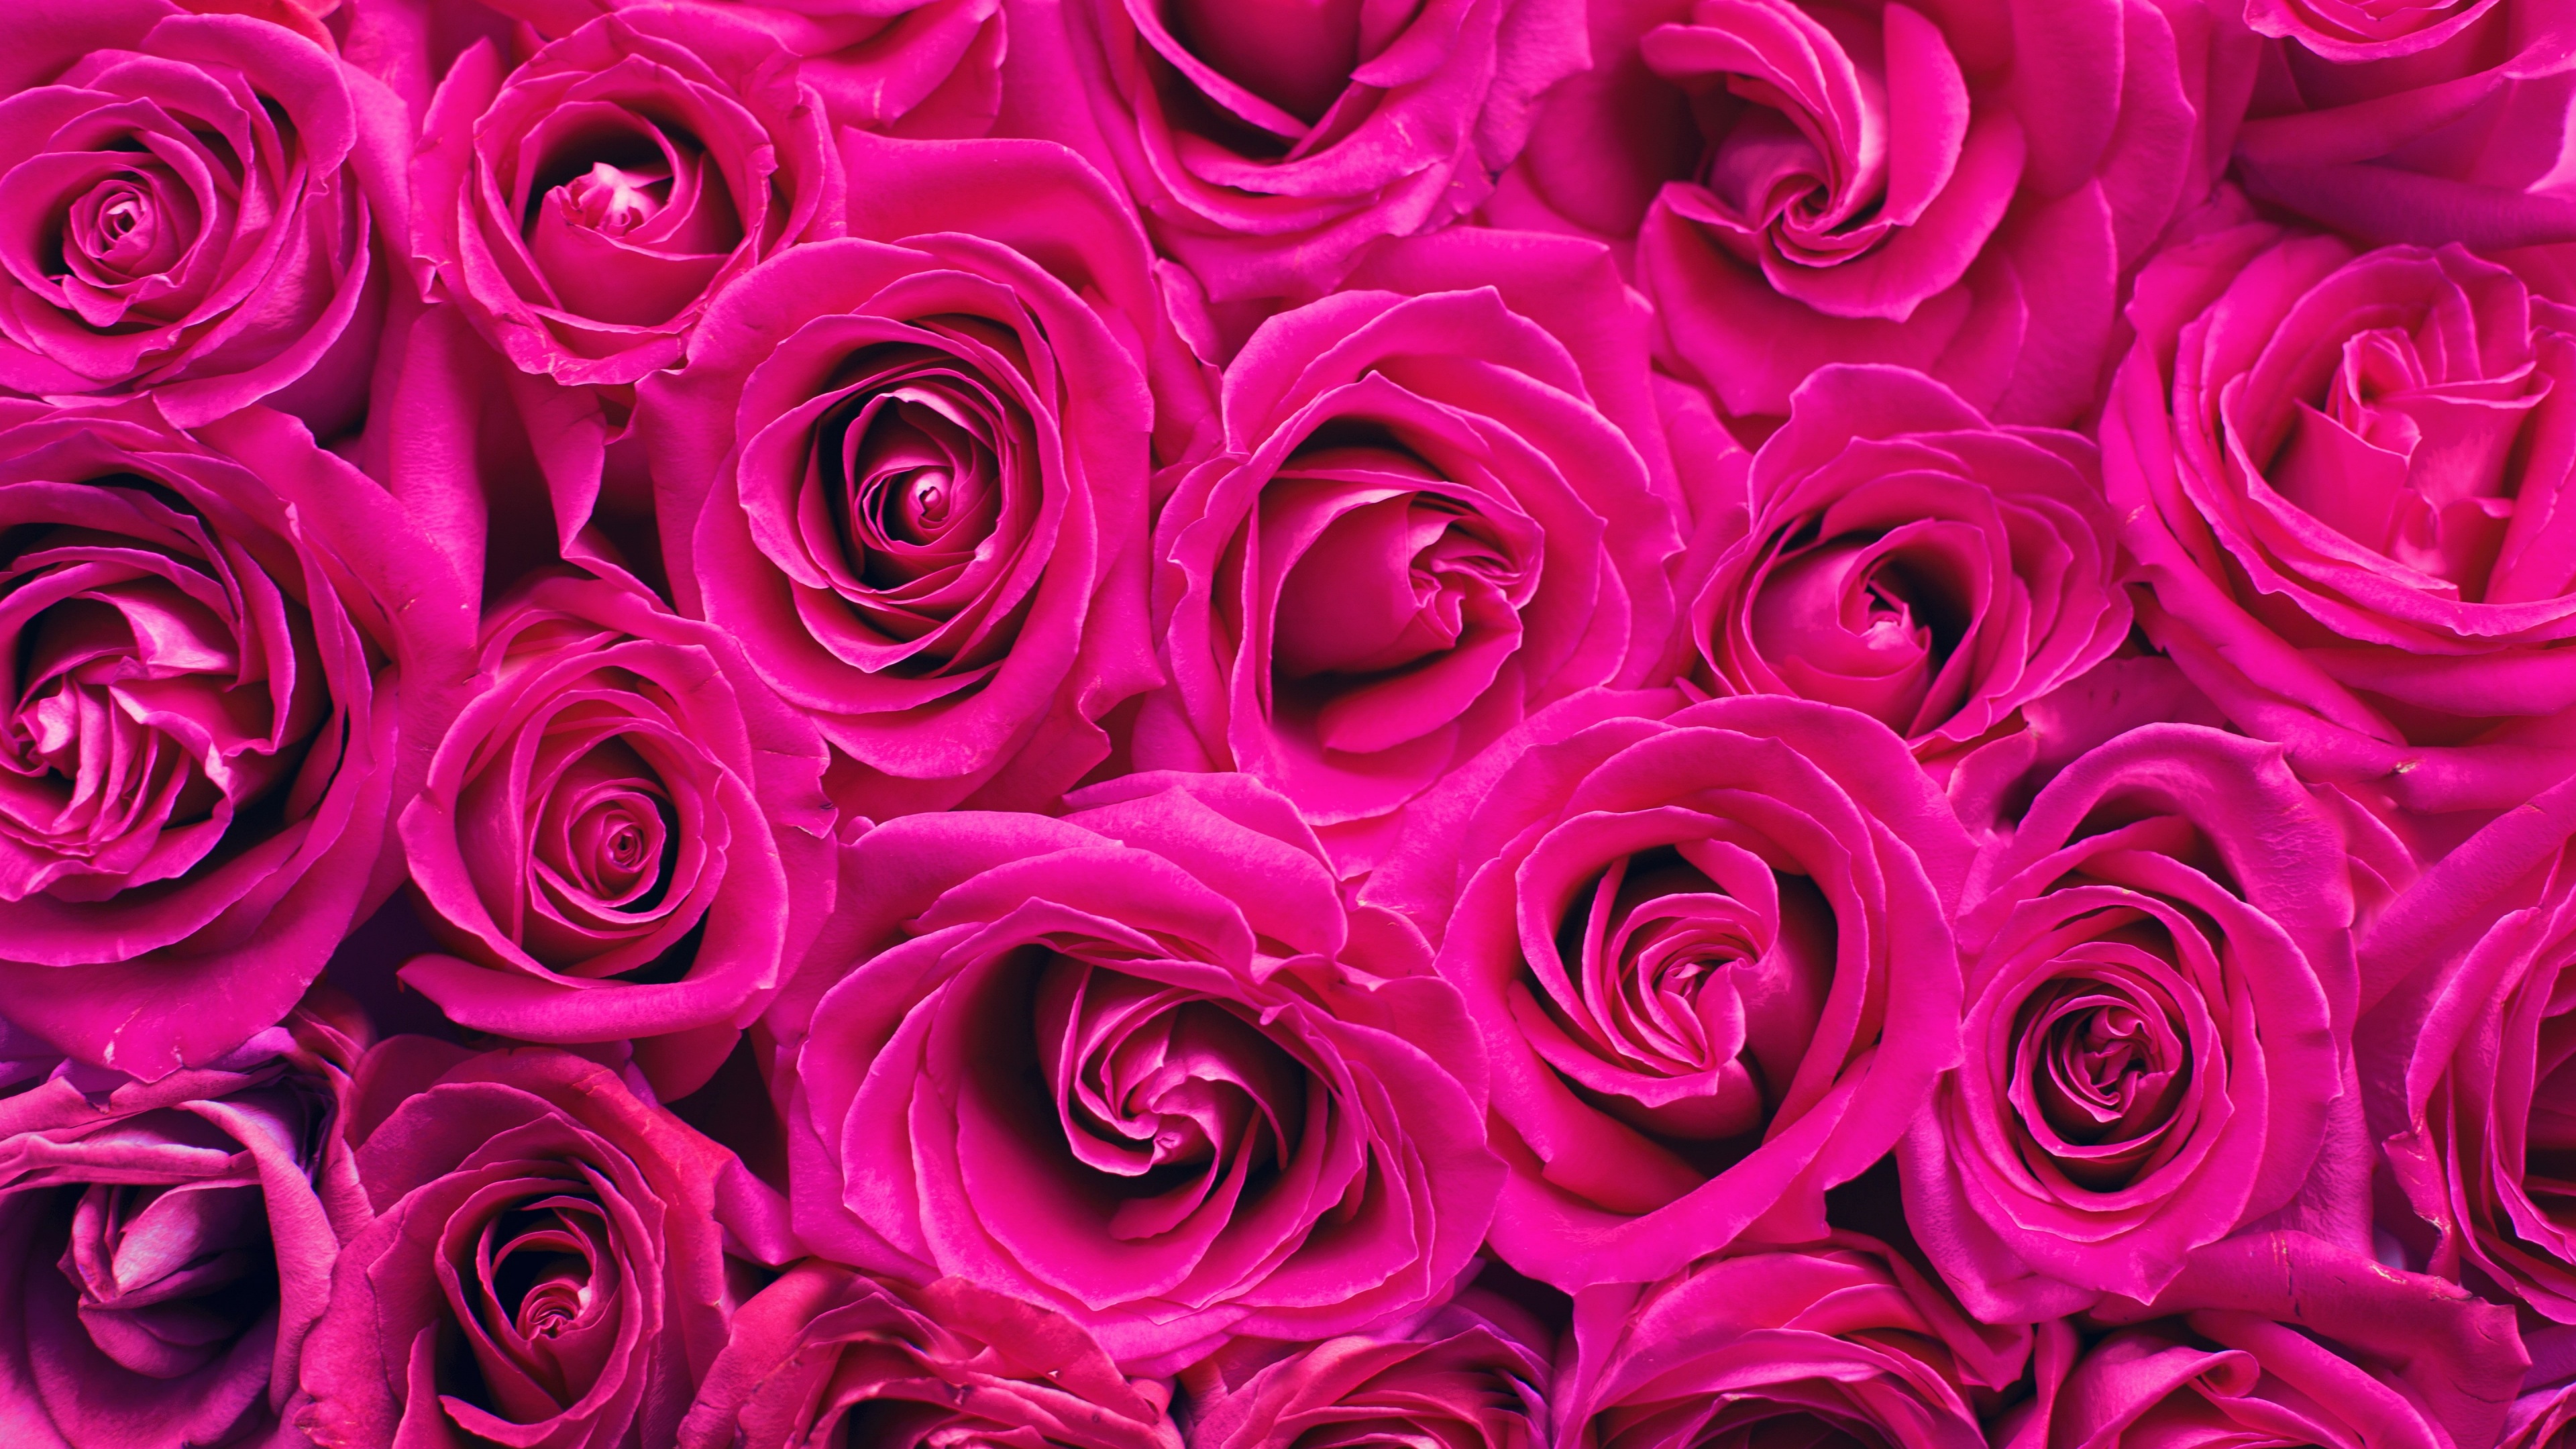 Hoa hồng hình nền 4k - Hoa hồng là biểu tượng cho sự lãng mạn và tình yêu. Hình nền hoa hồng 4k của chúng tôi sẽ đem đến cho bạn một tinh thần yêu đời và tươi mới. Các bông hoa hồng được thiết kế độc đáo và tinh tế, đem đến một cảm giác vô cùng thư thái và tuyệt vời. Hãy tải ngay để trải nghiệm!